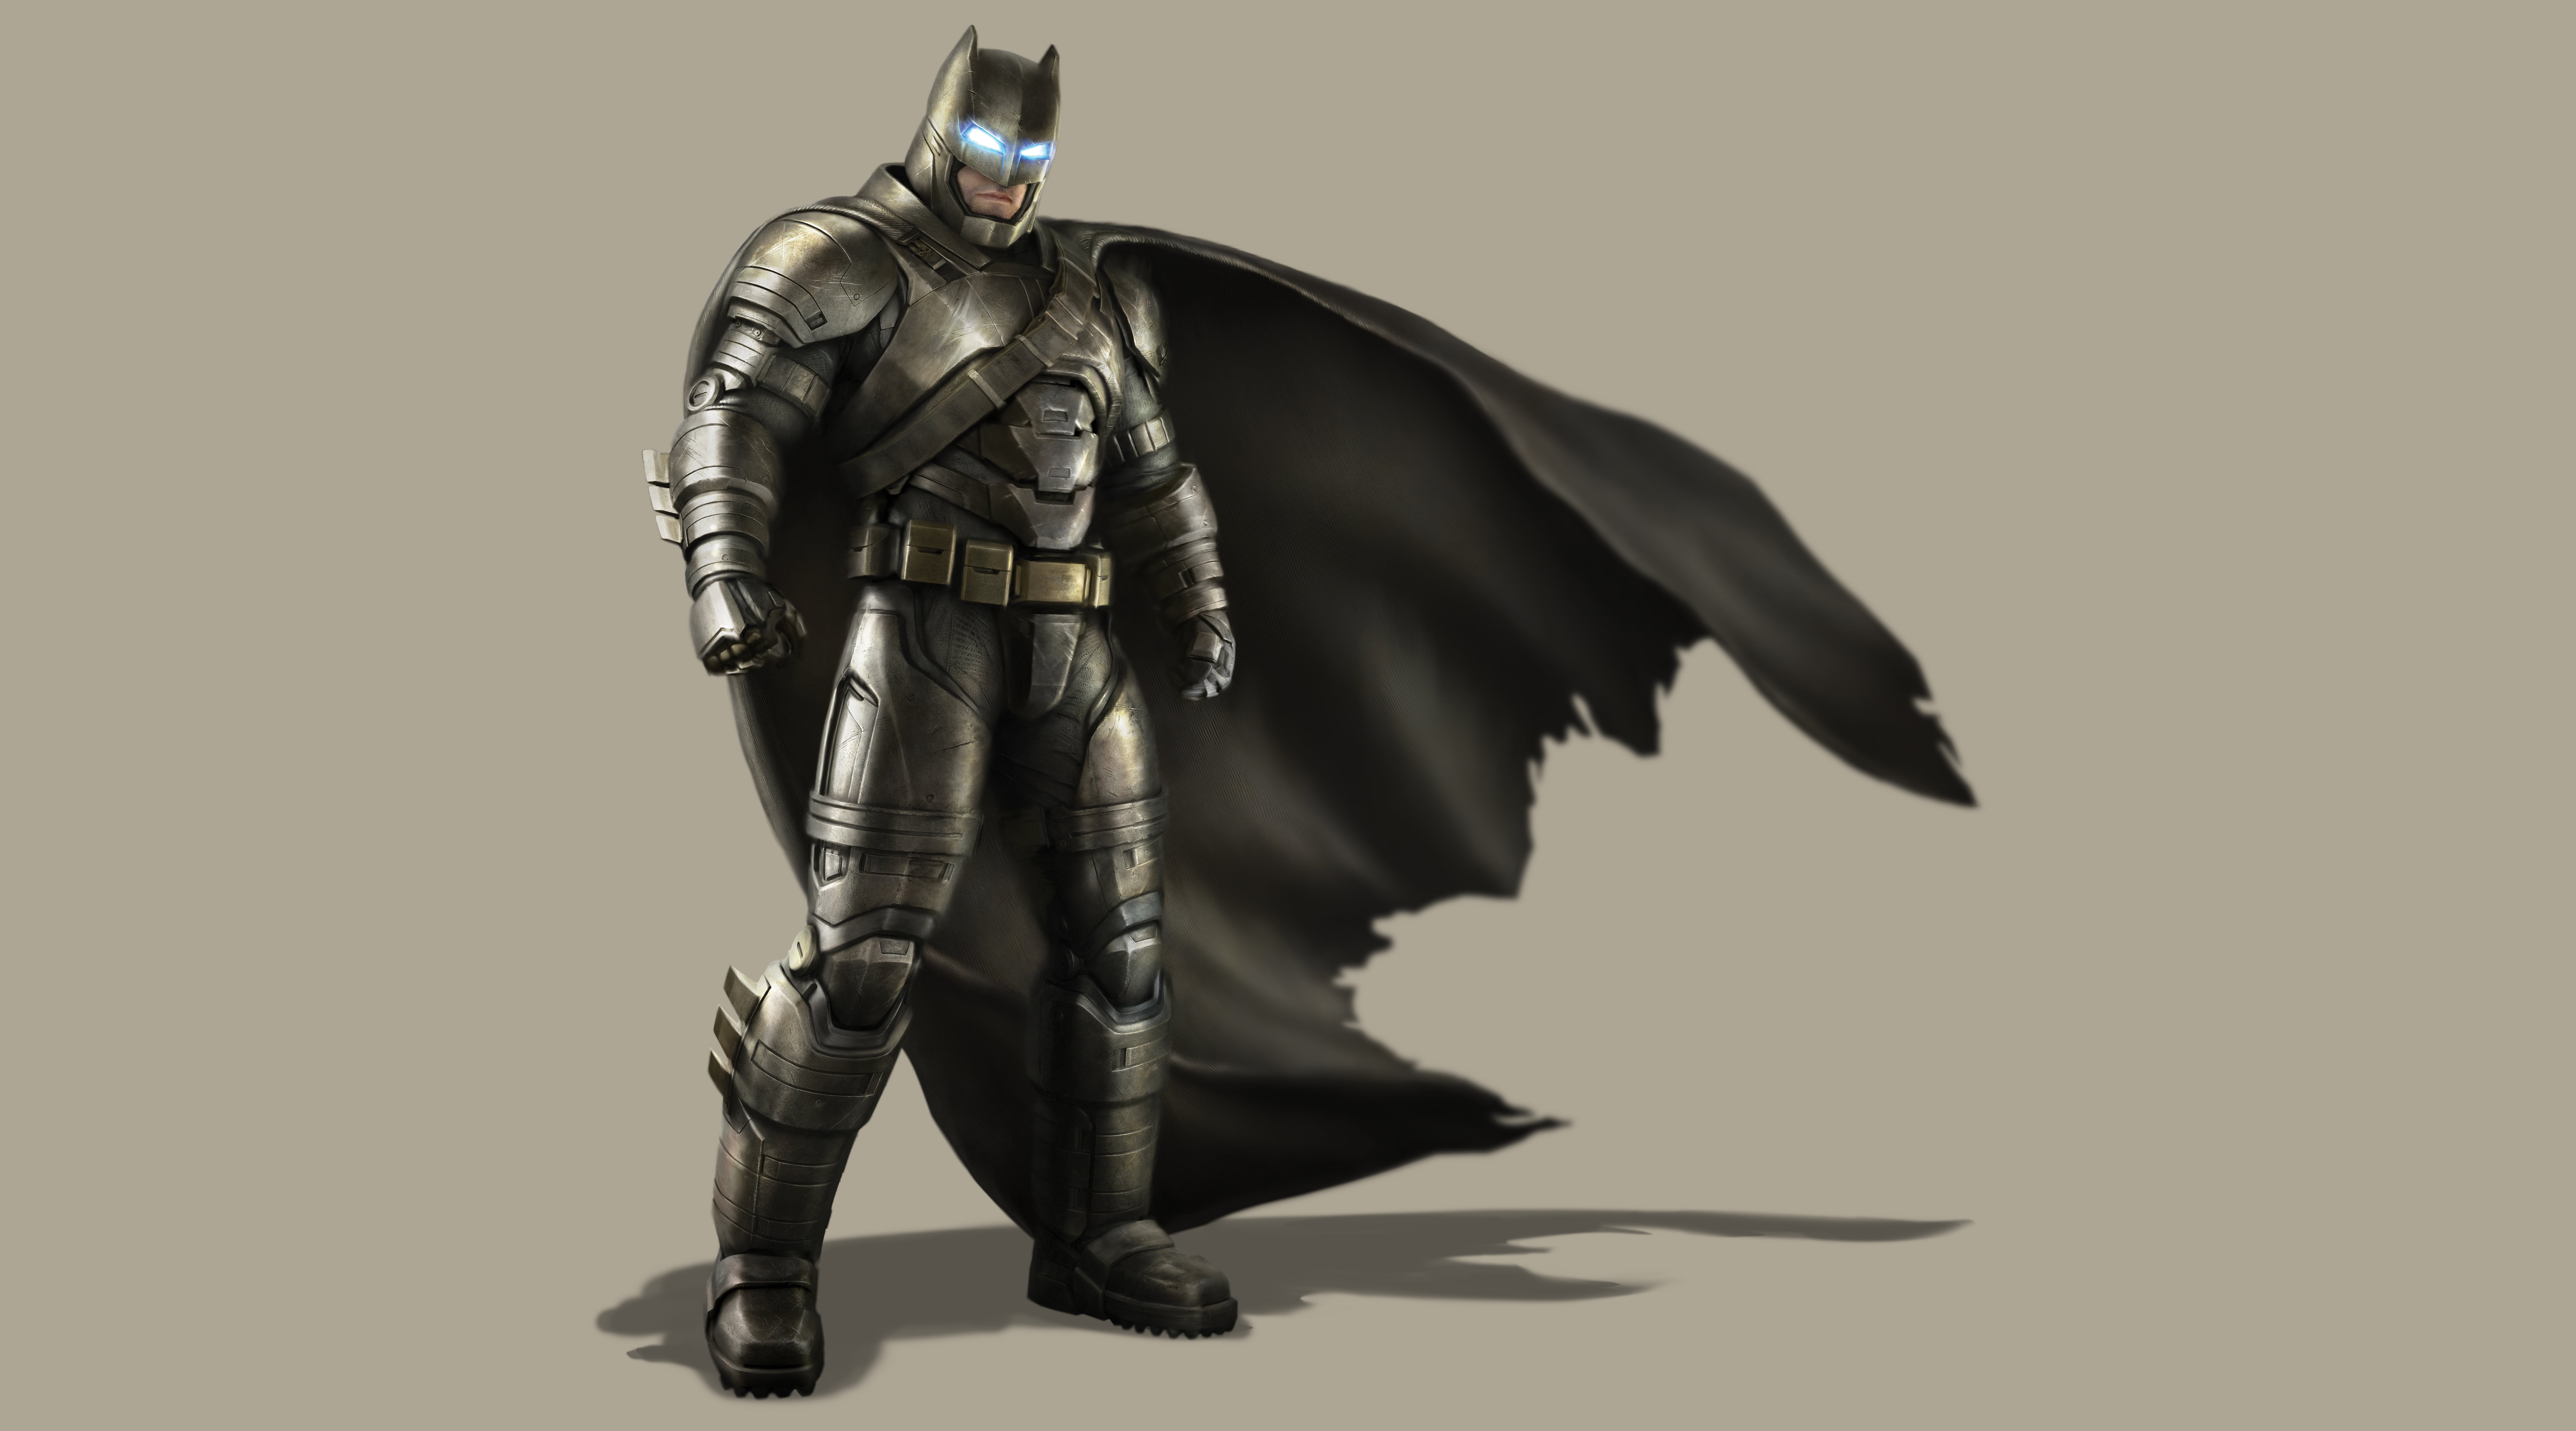 Batman Armor Wallpapers - Wallpaper Cave